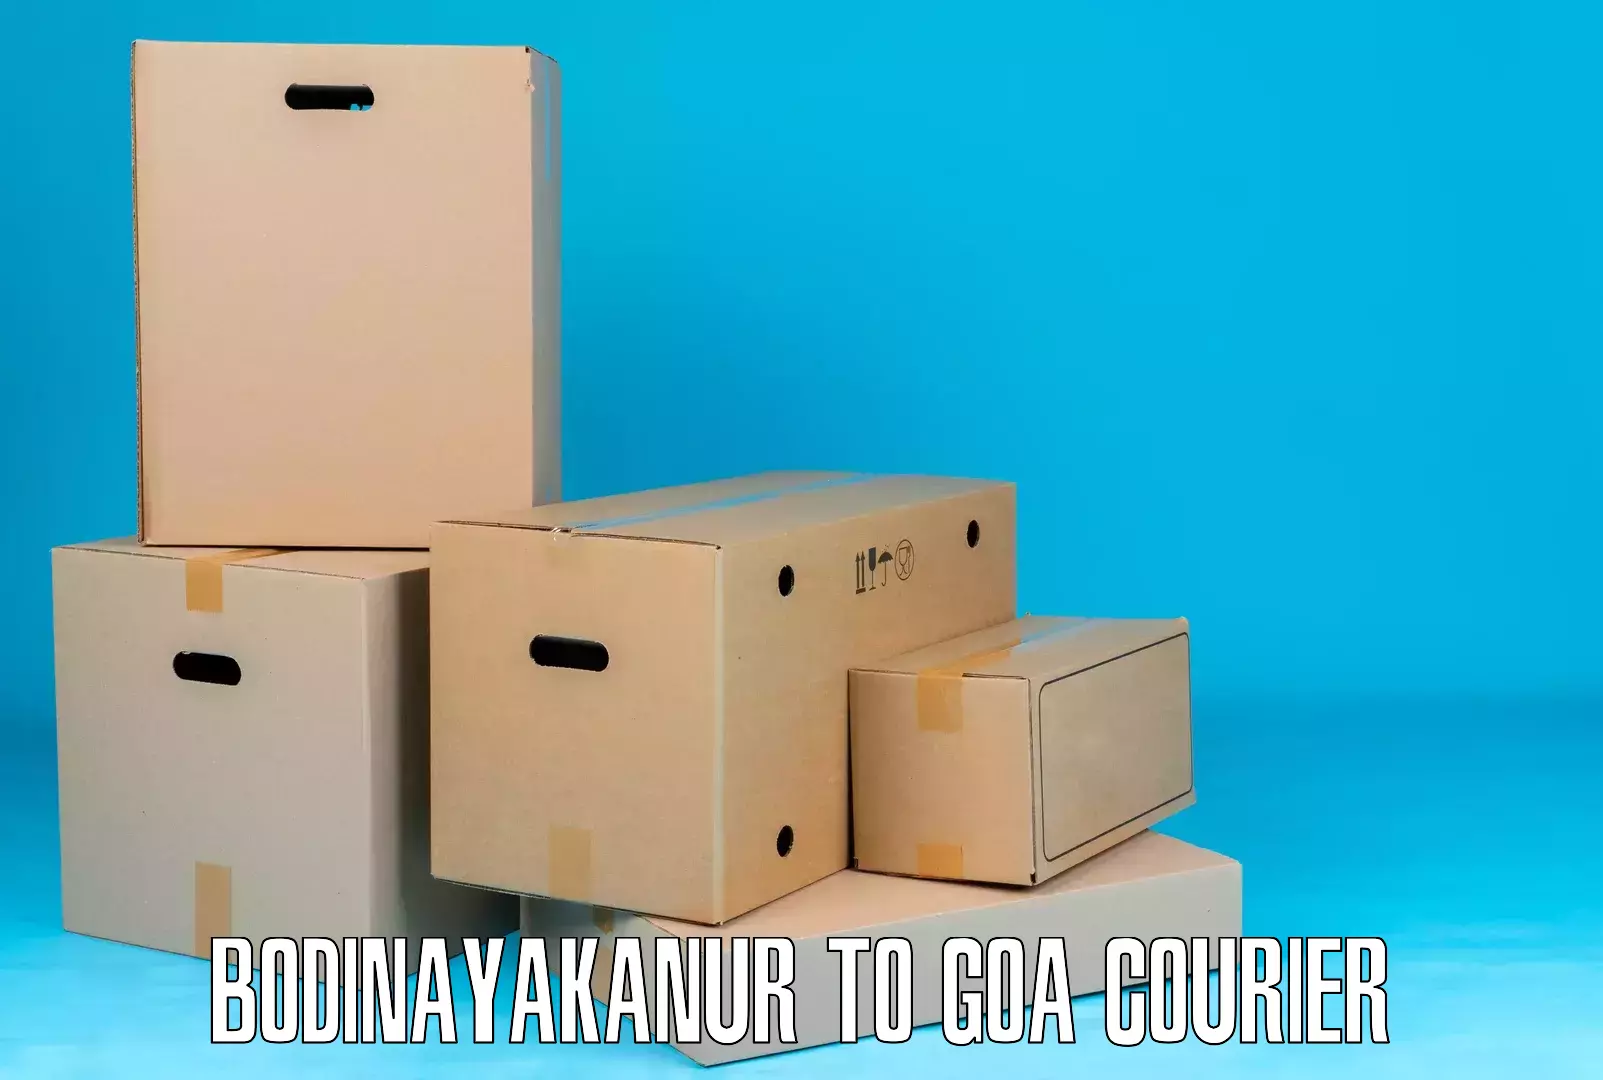 Affordable parcel service Bodinayakanur to Mormugao Port